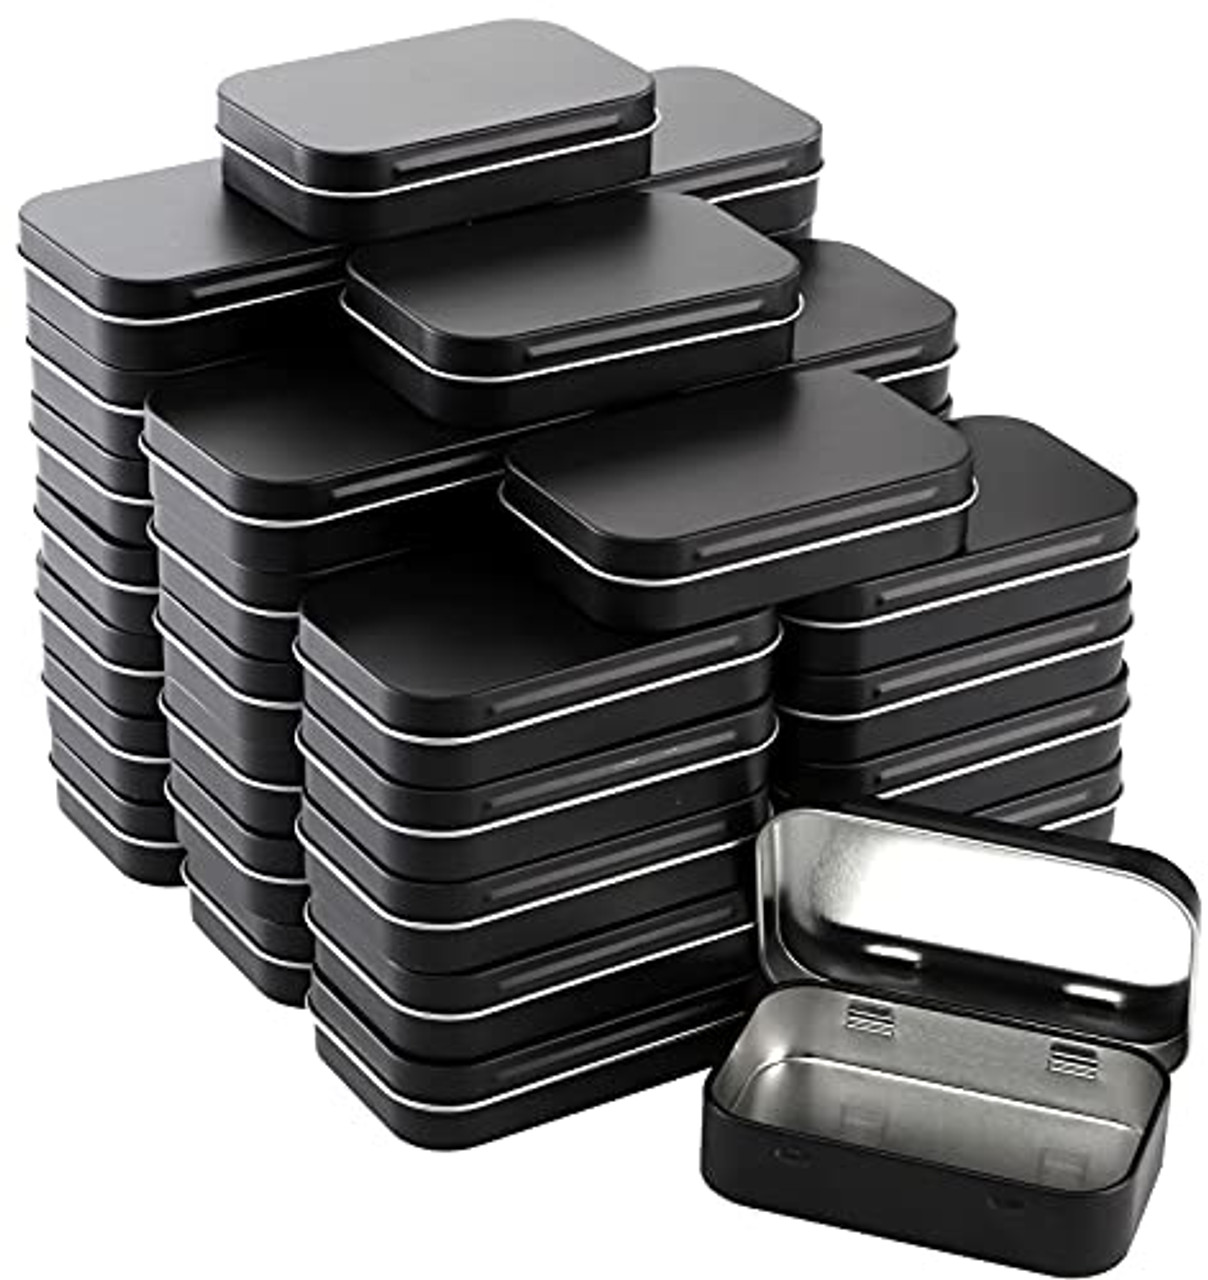 Metal Storage Cases / Organizer Bins